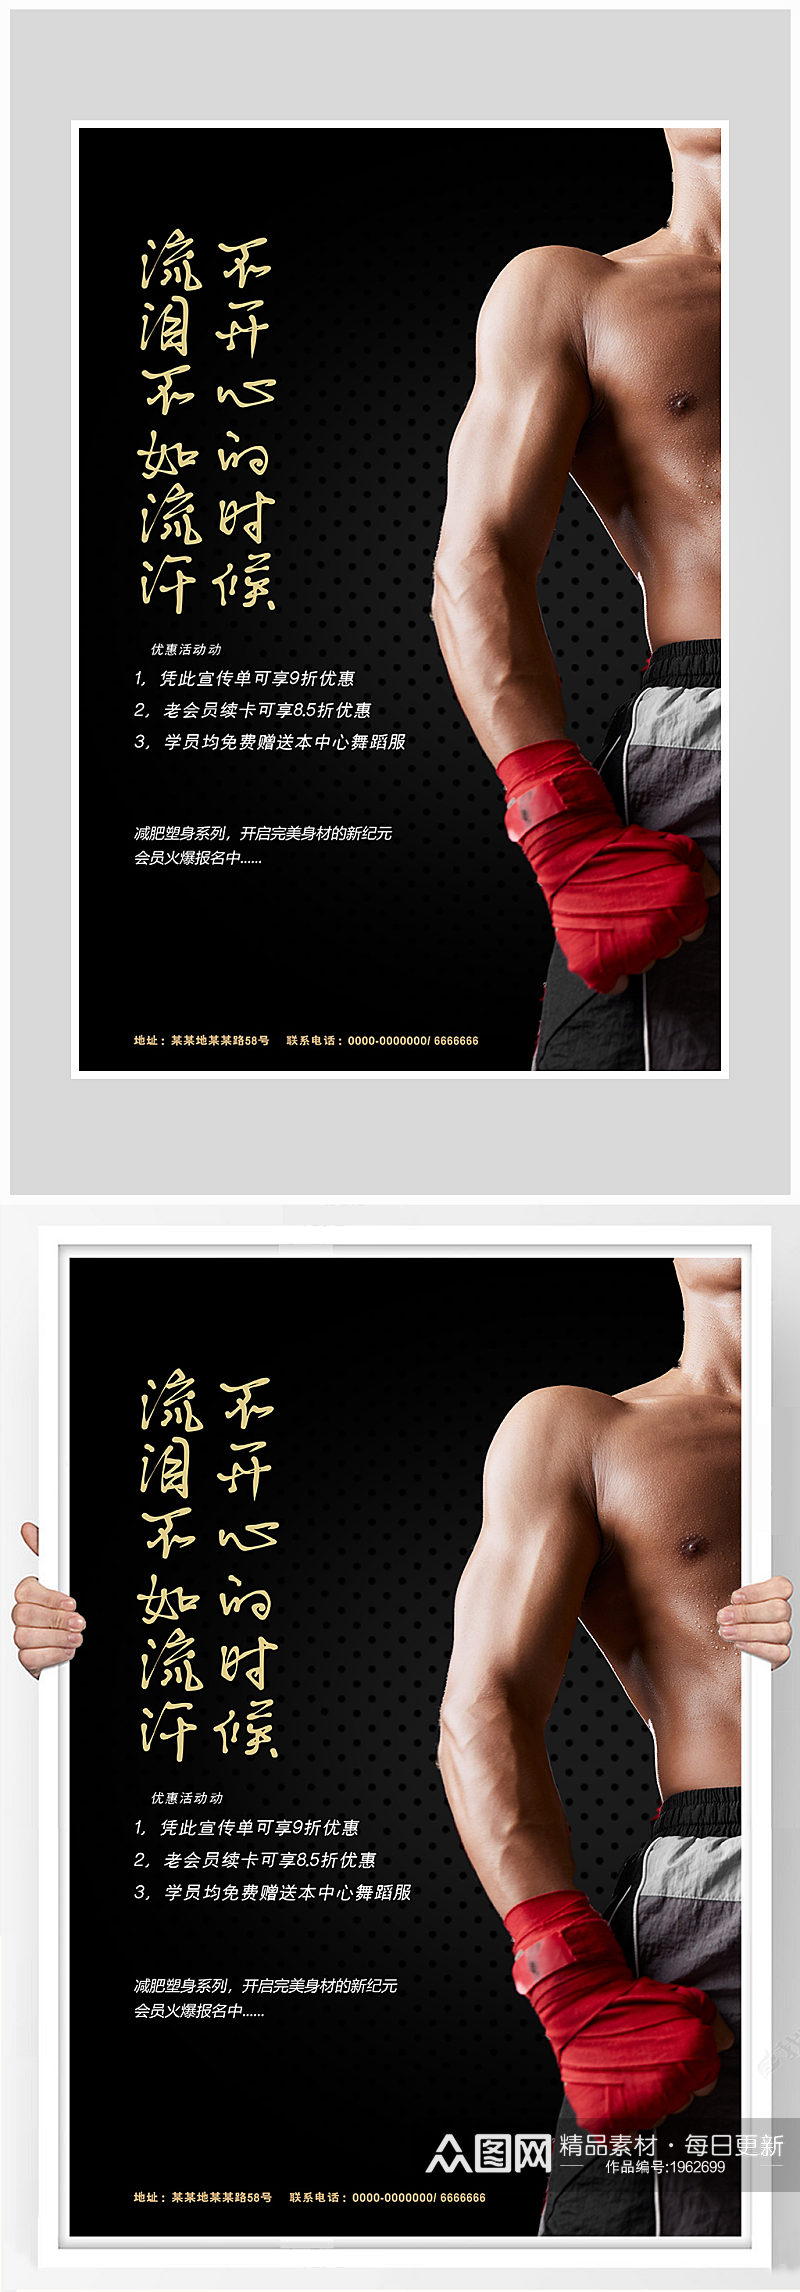 创意质感拳击健身海报设计素材